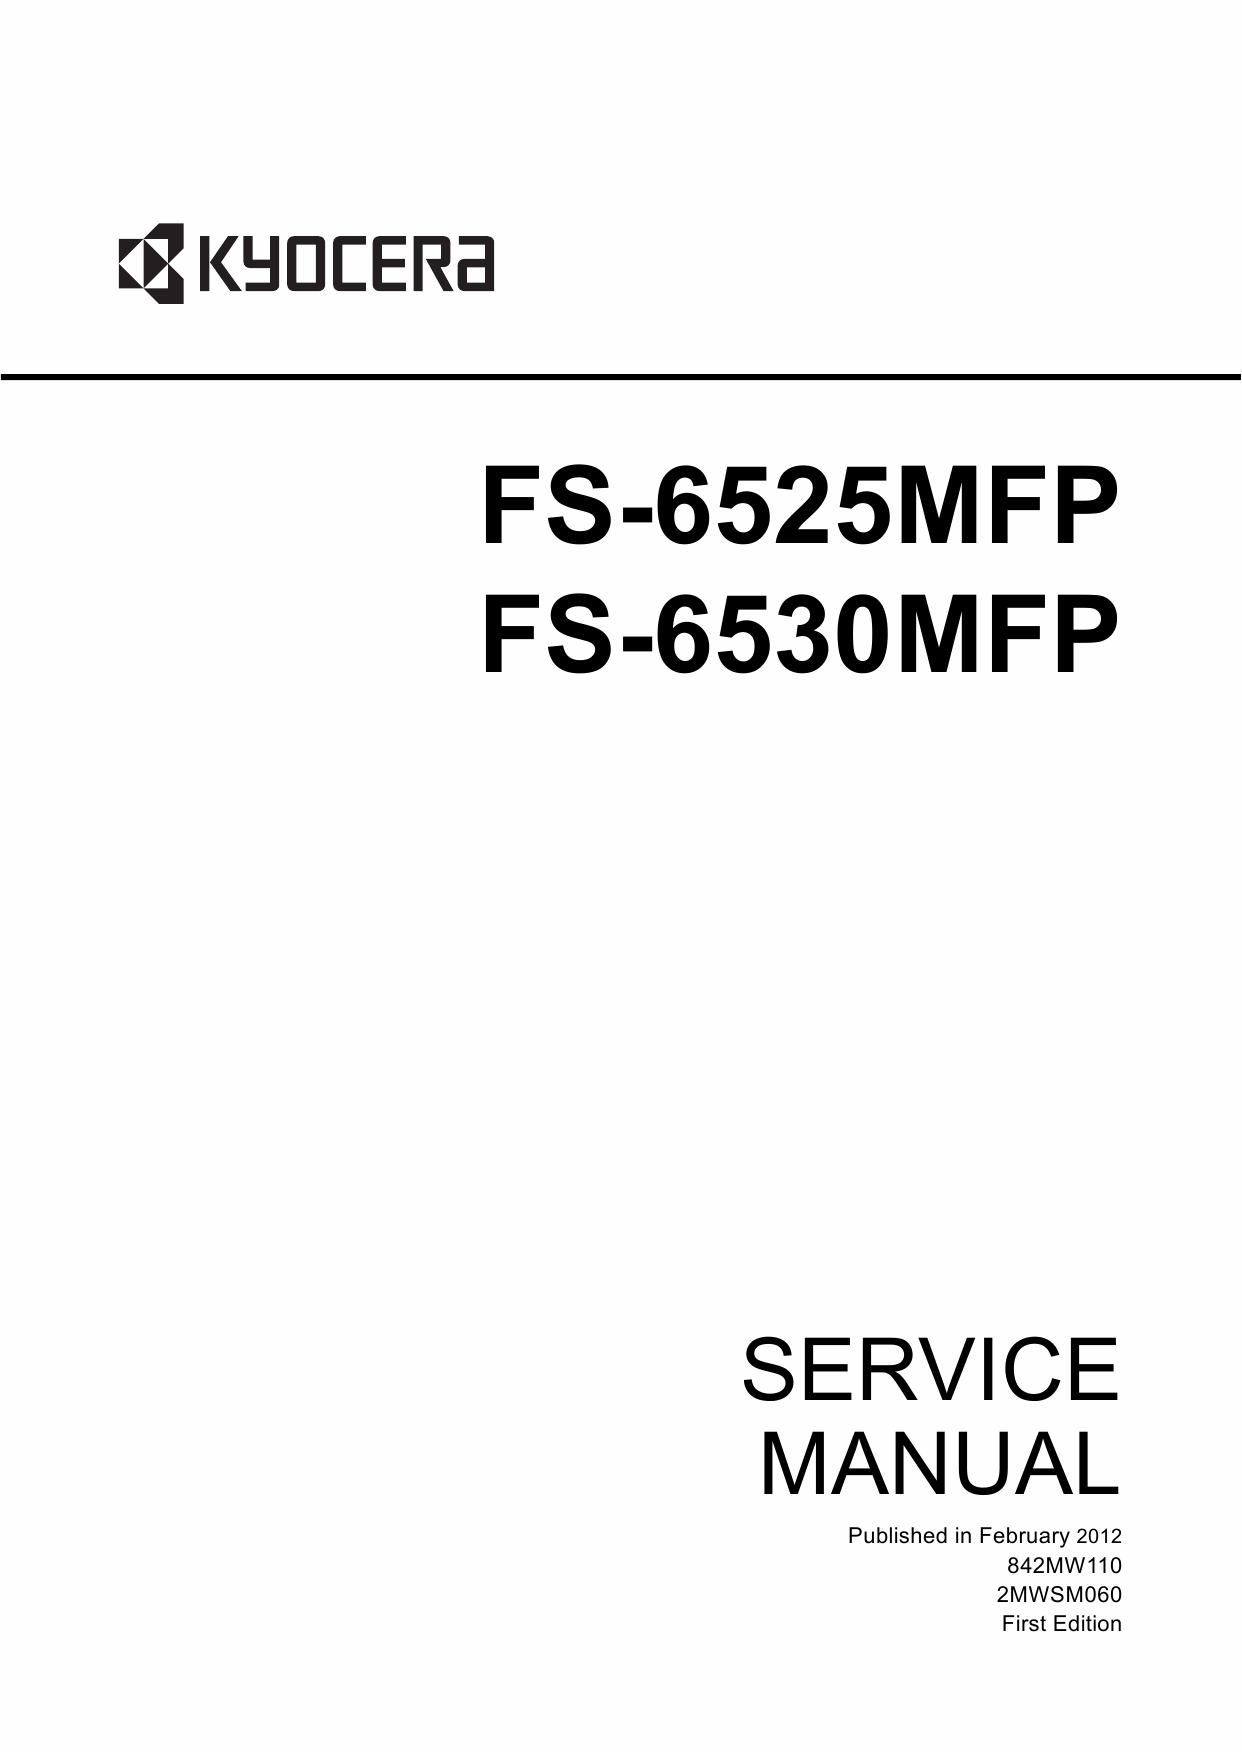 KYOCERA MFP FS-6525MFP 6530MFP Service Manual-1